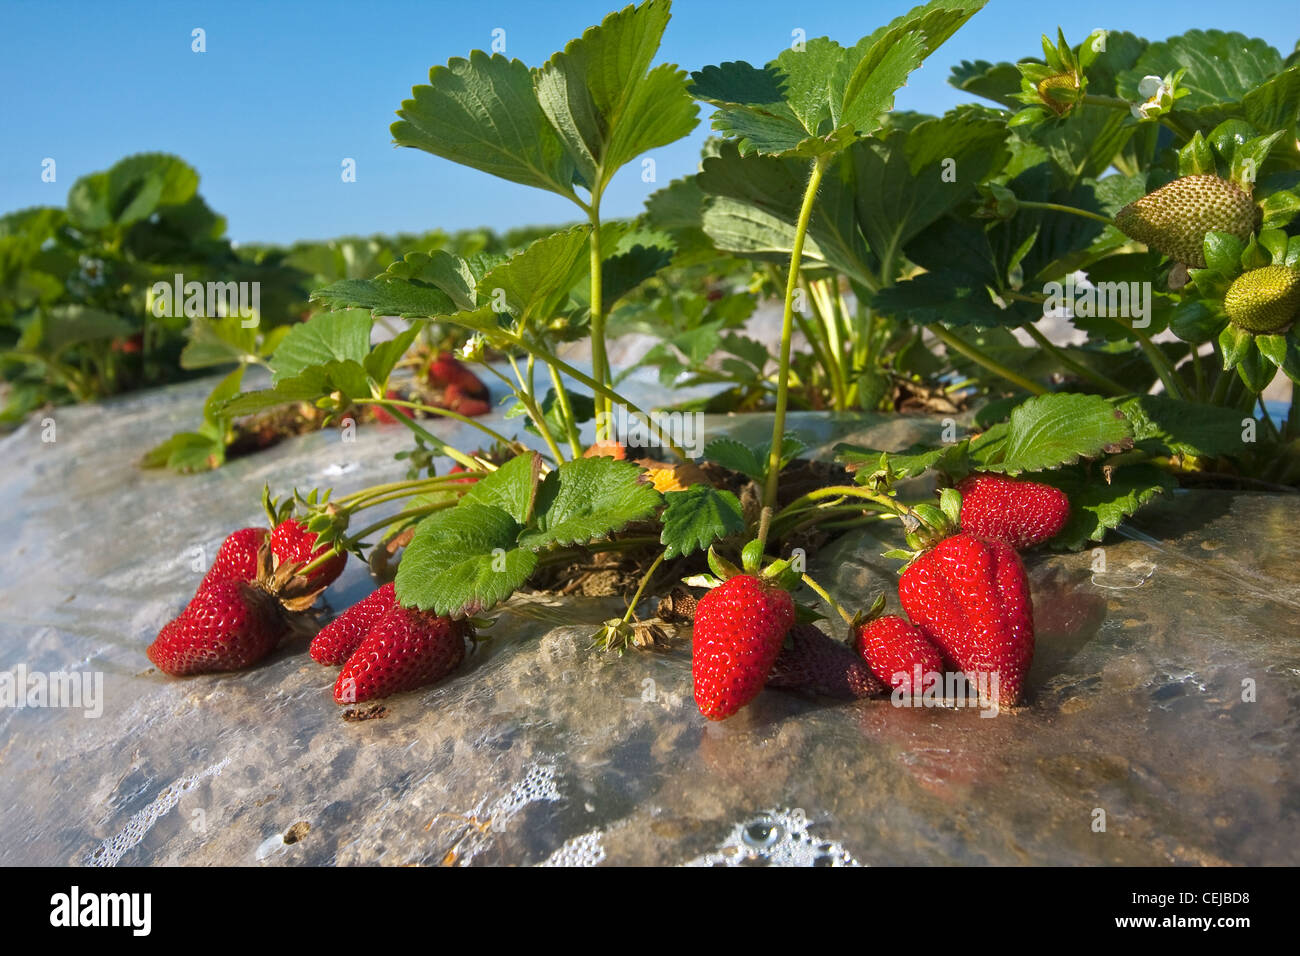 Venta de fresas frescas foto de archivo. Imagen de manzana - 70673740